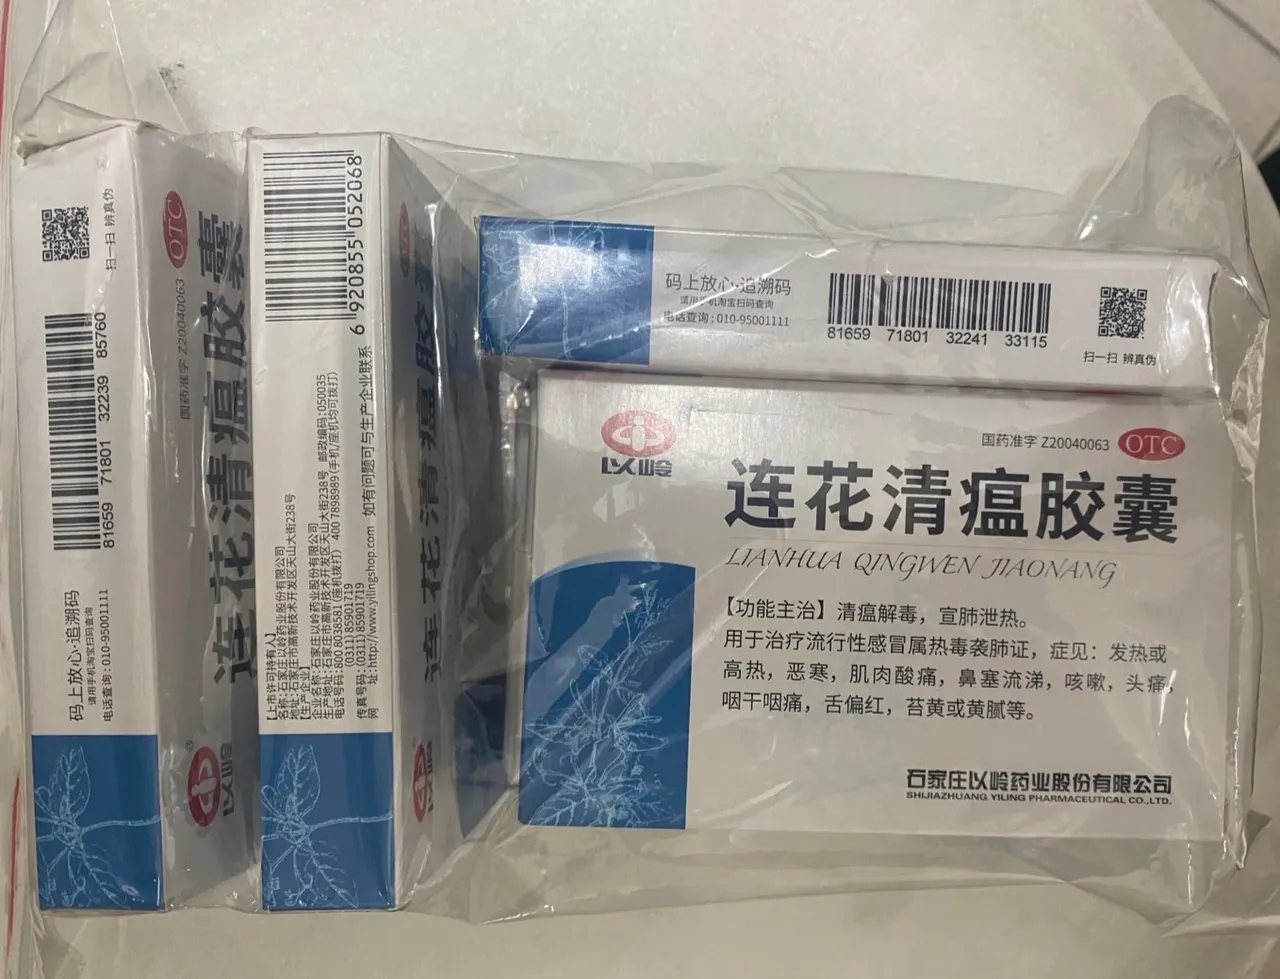 中國將未經核准的「蓮花清瘟膠囊」「DEWEI快篩試劑」，寄到郭的服務處。屏檢提供